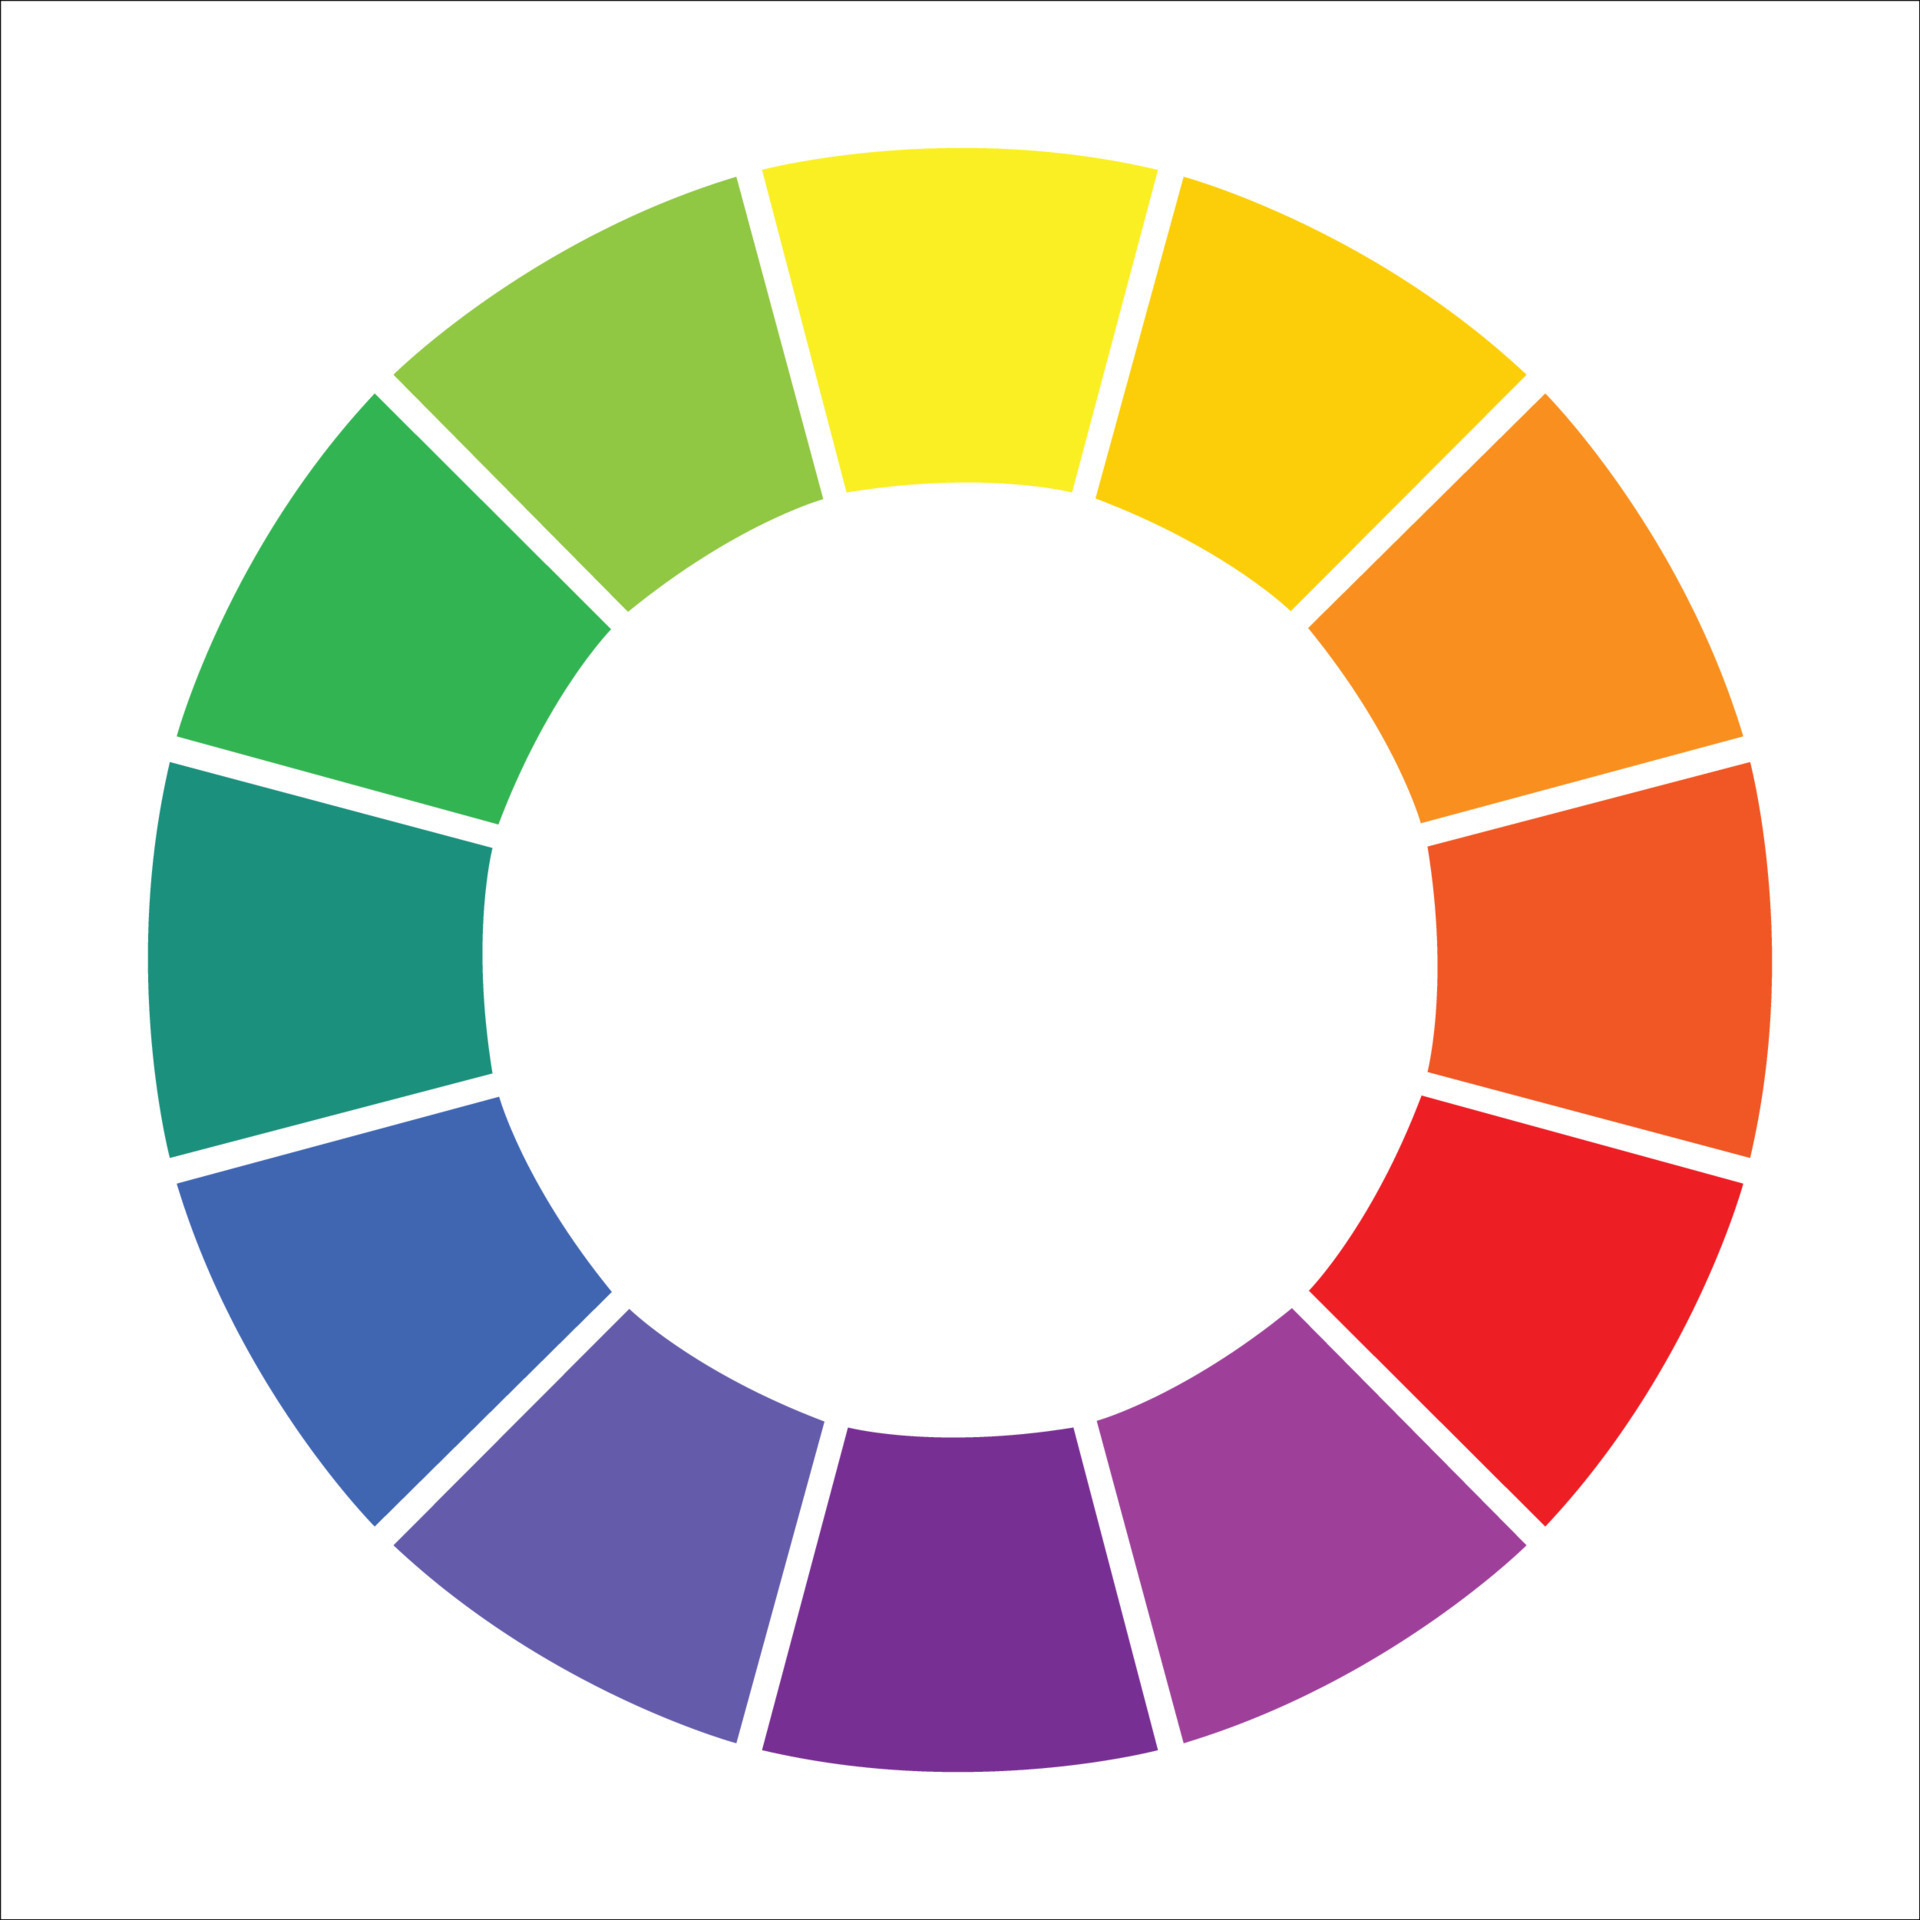 Colors edit. Цветовой круг Иттена для детей. Цветовой круг Иттена звезда. Цветной круг. Цветовой круг для дизайнеров.